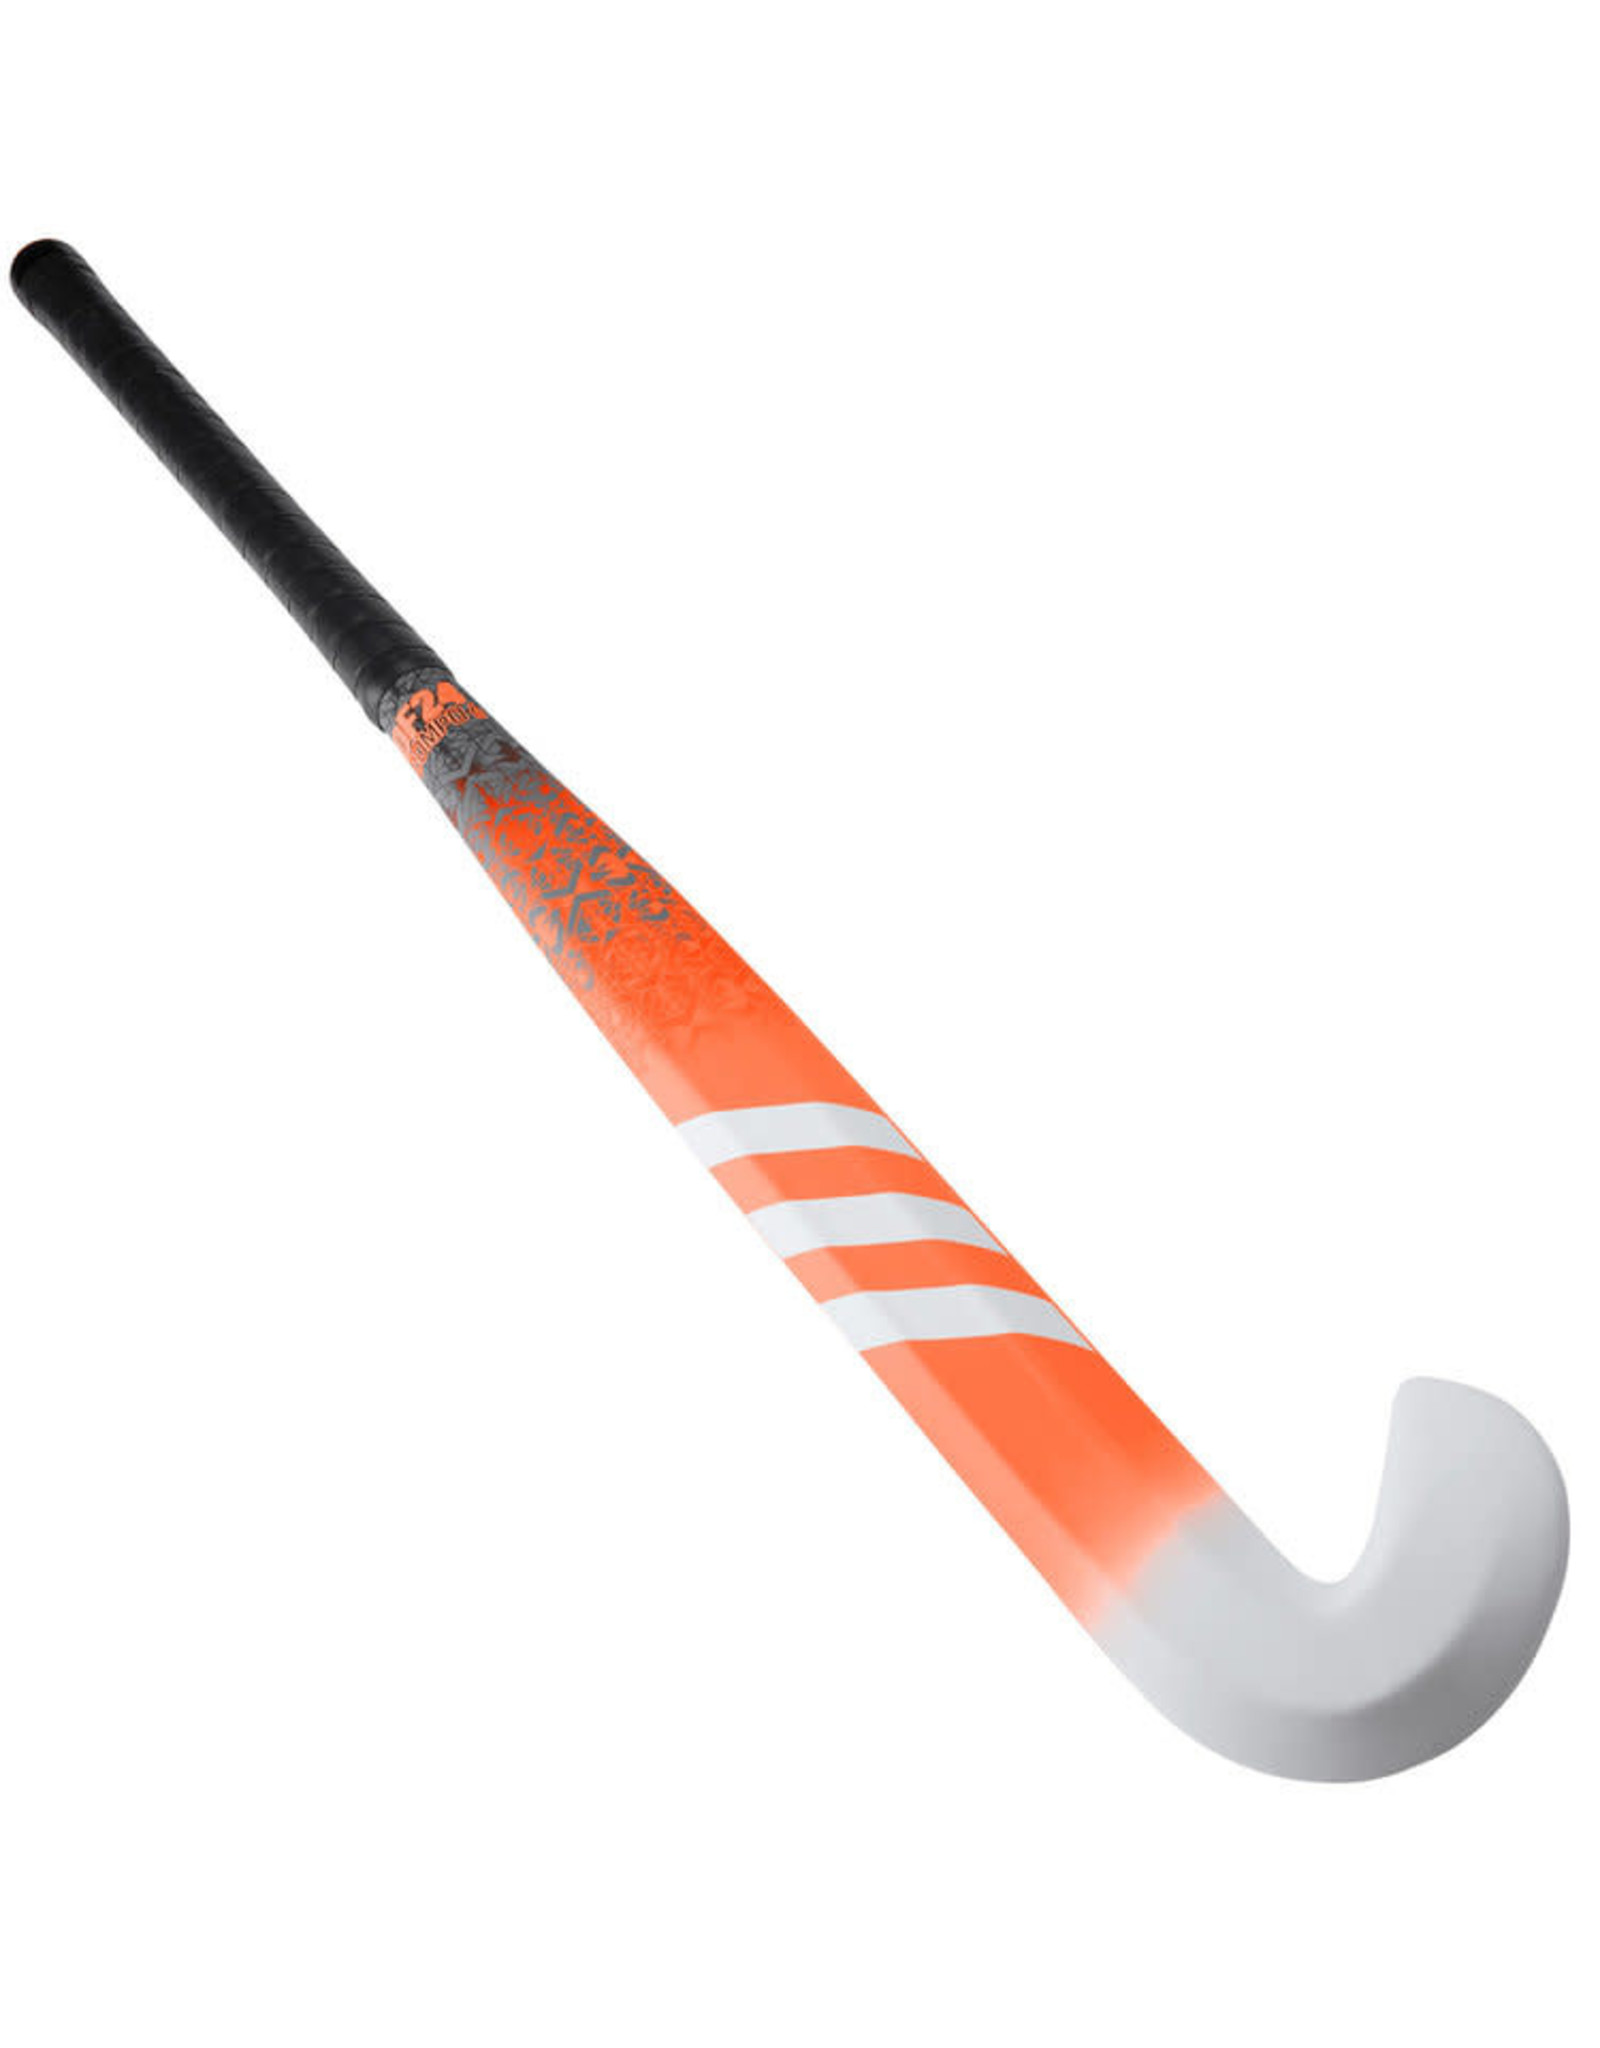 adidas df24 compo 6 hockey stick